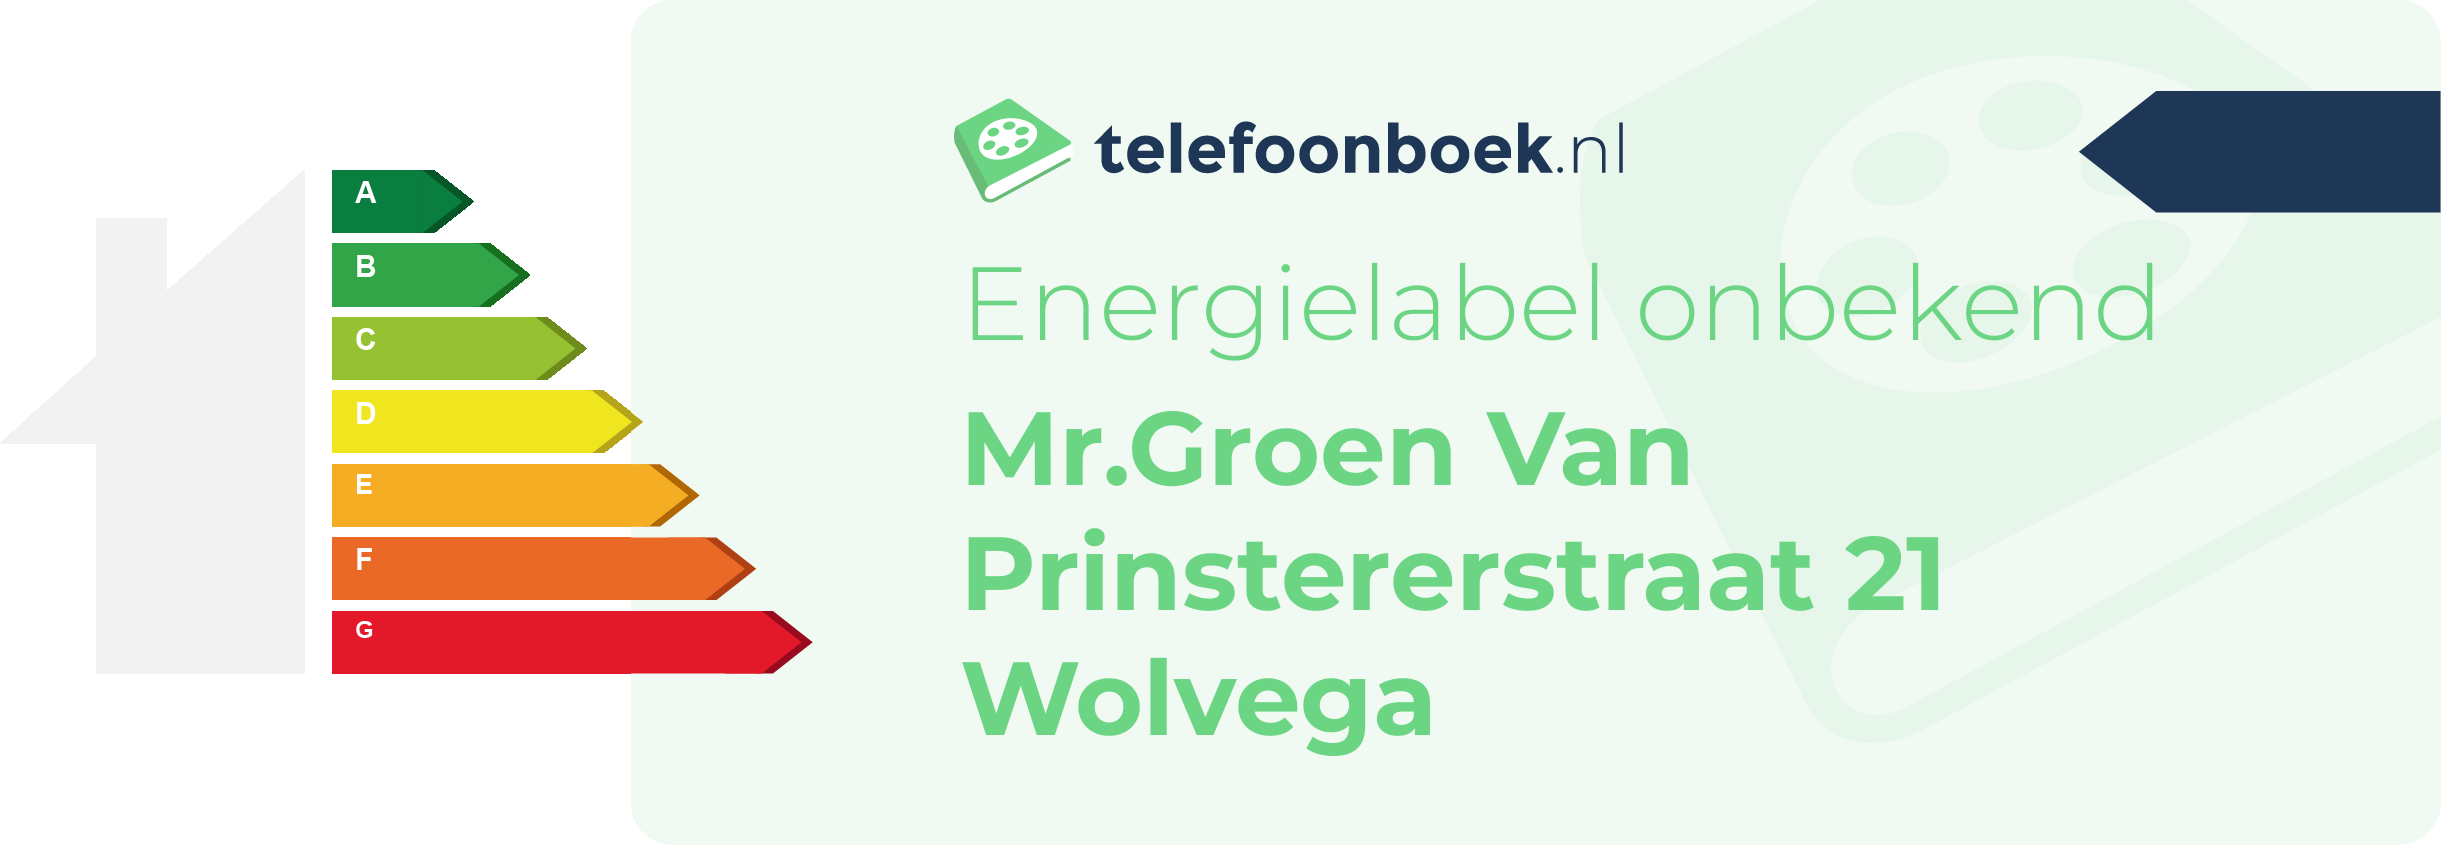 Energielabel Mr.Groen Van Prinstererstraat 21 Wolvega